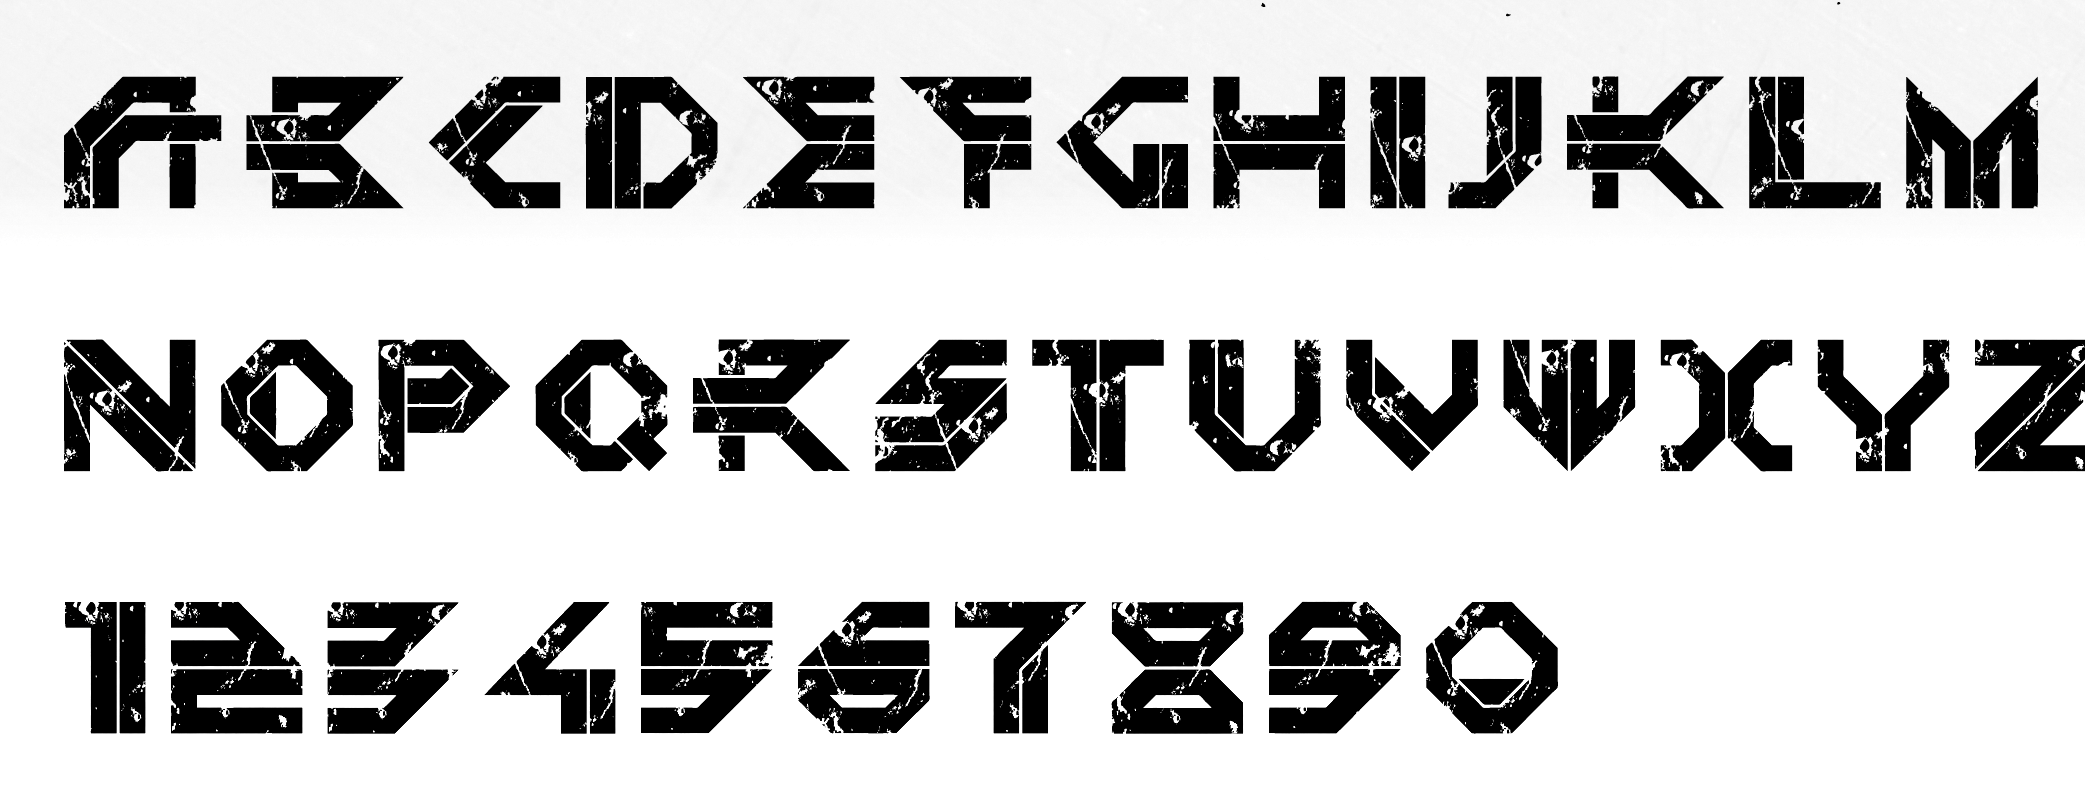 Cyberpunk rus font фото 16